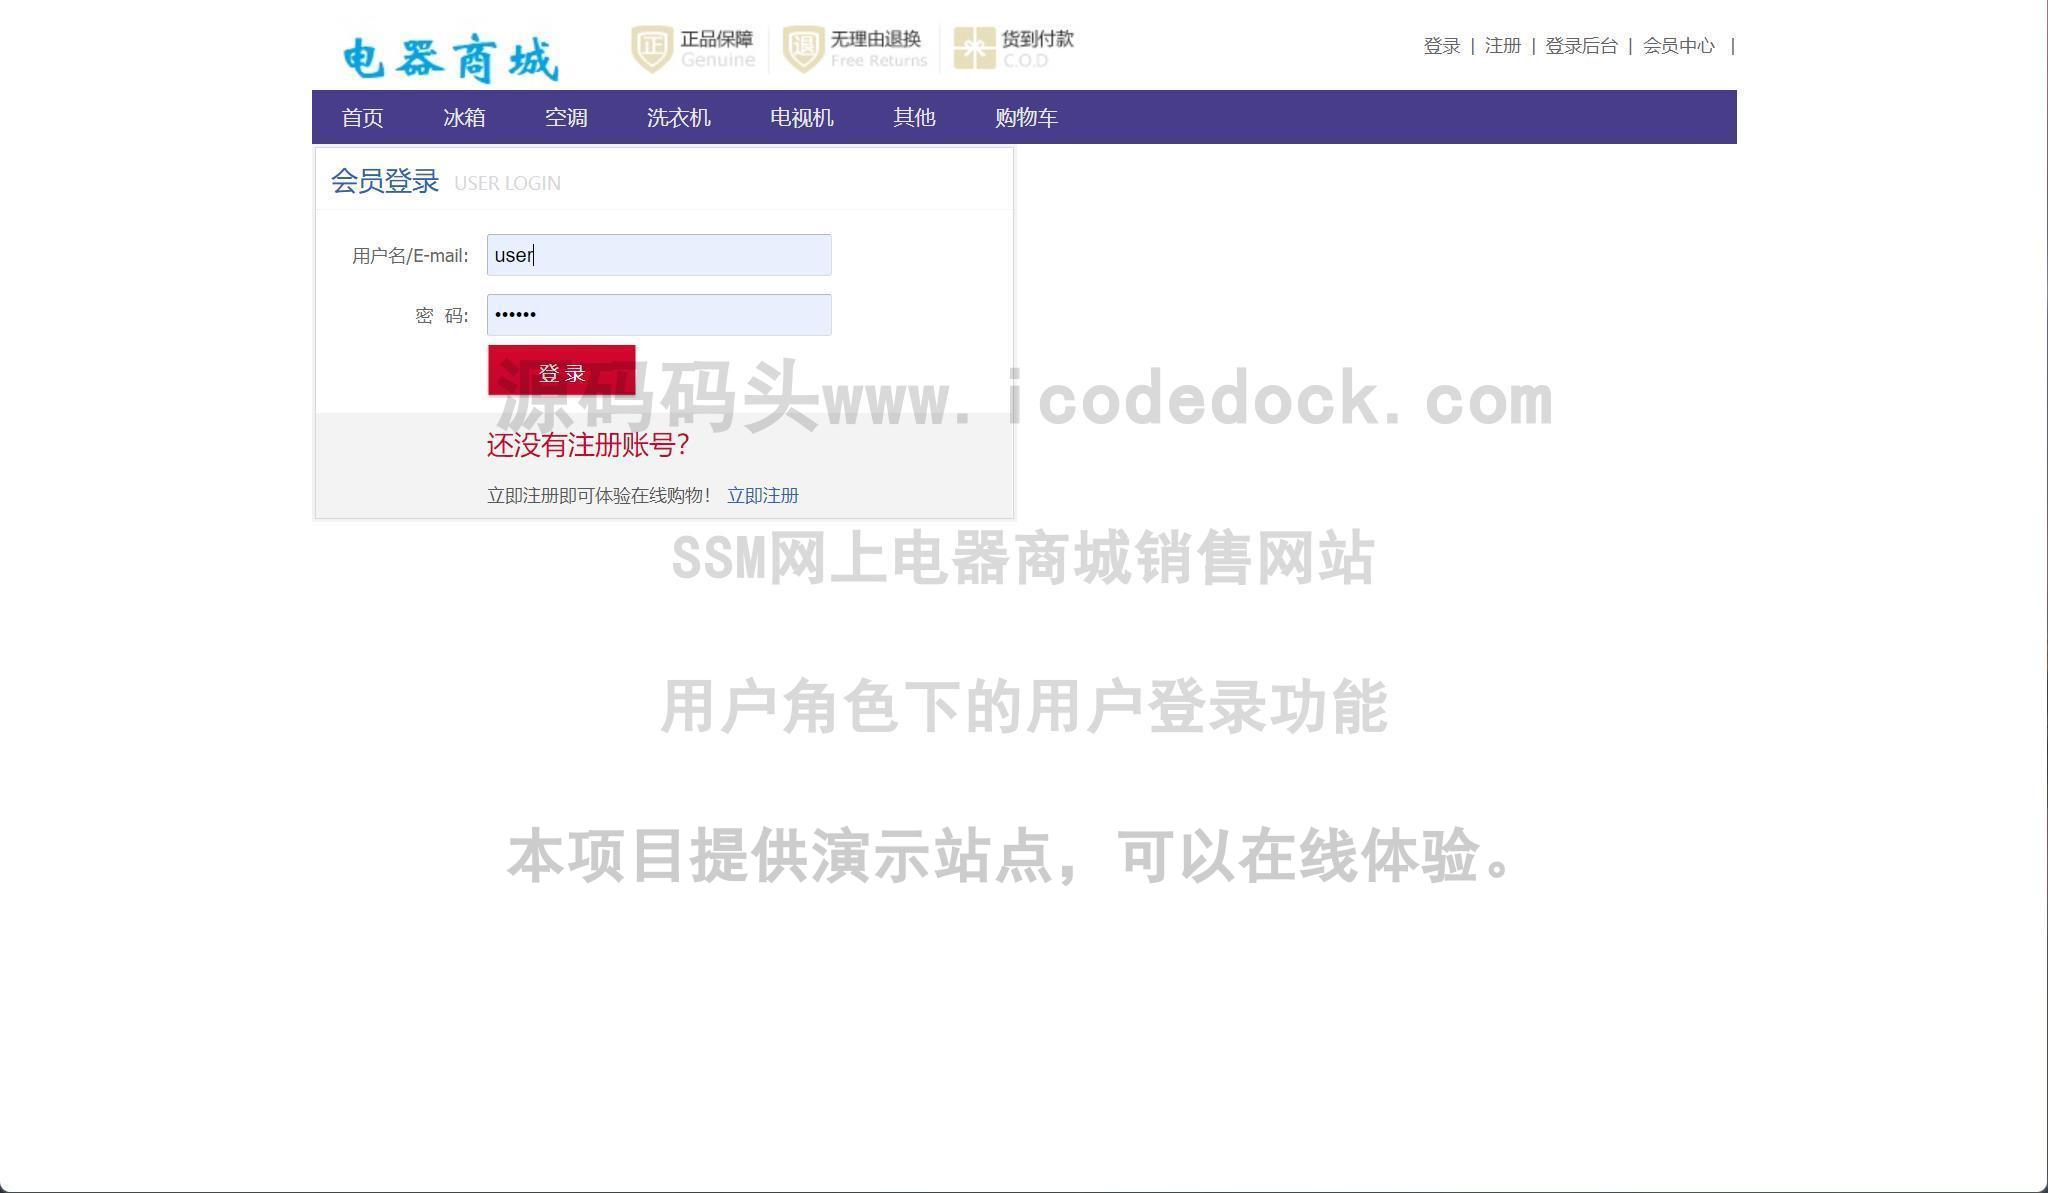 源码码头-SSM网上电器商城销售网站-用户角色-用户登录